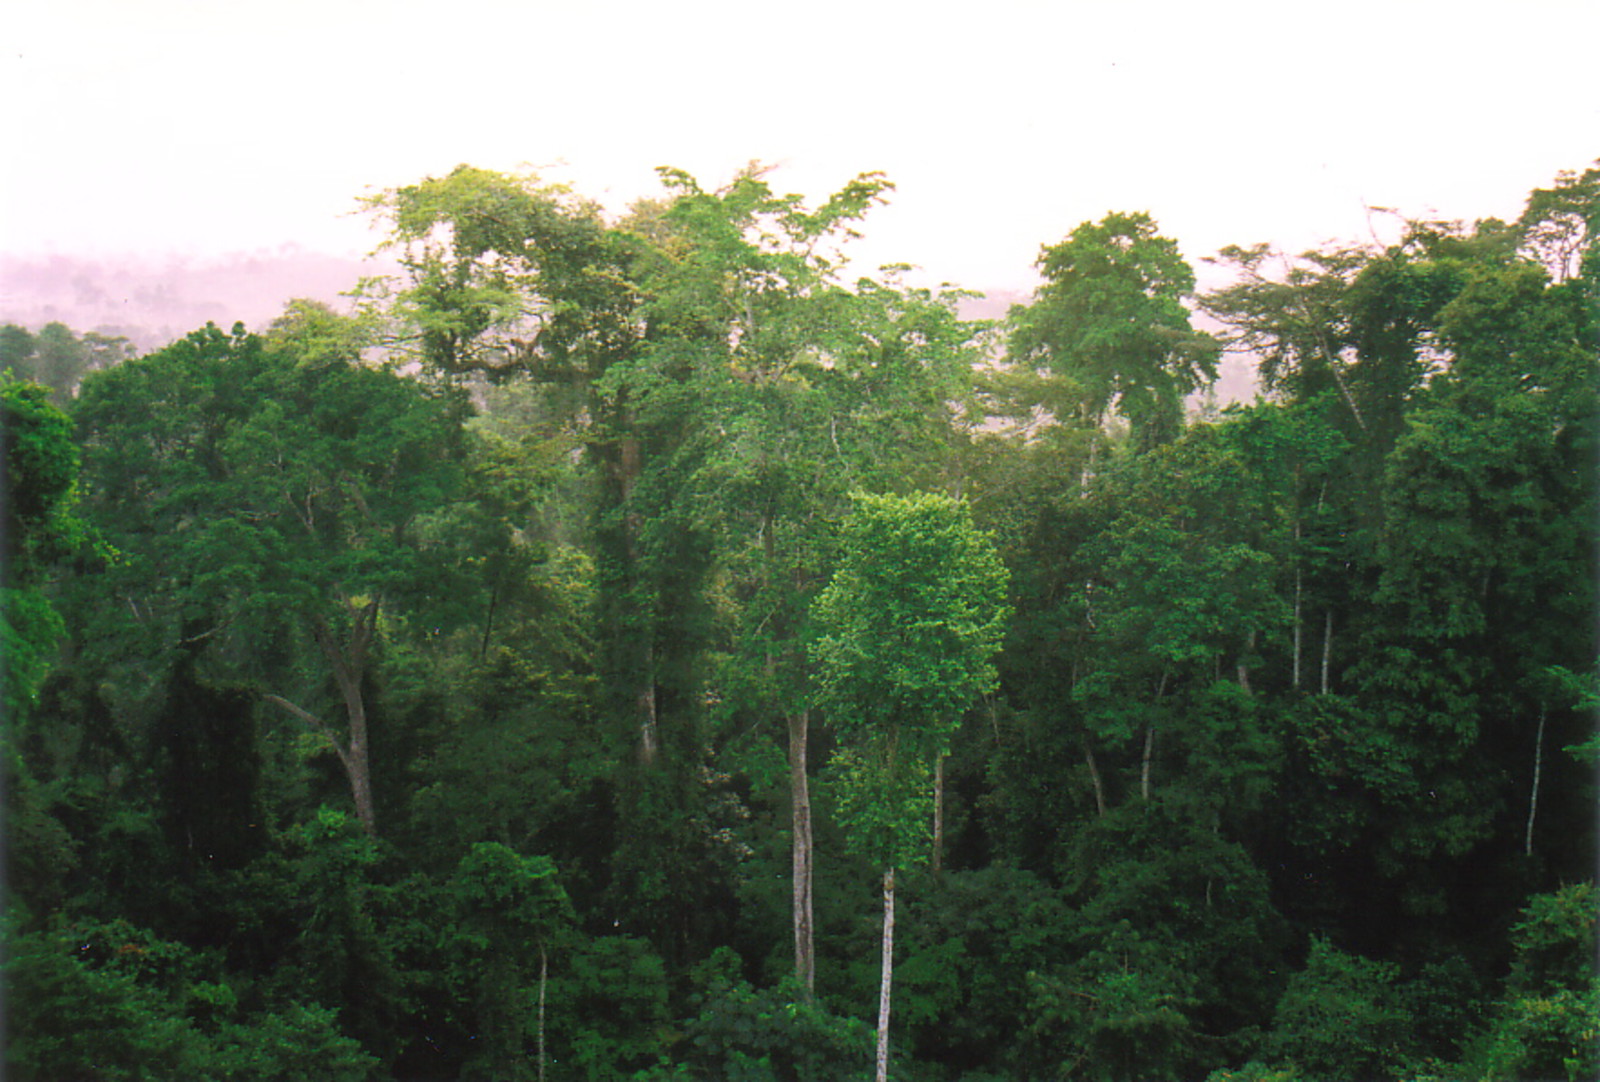 Rainforest canopy in Kakum National Park